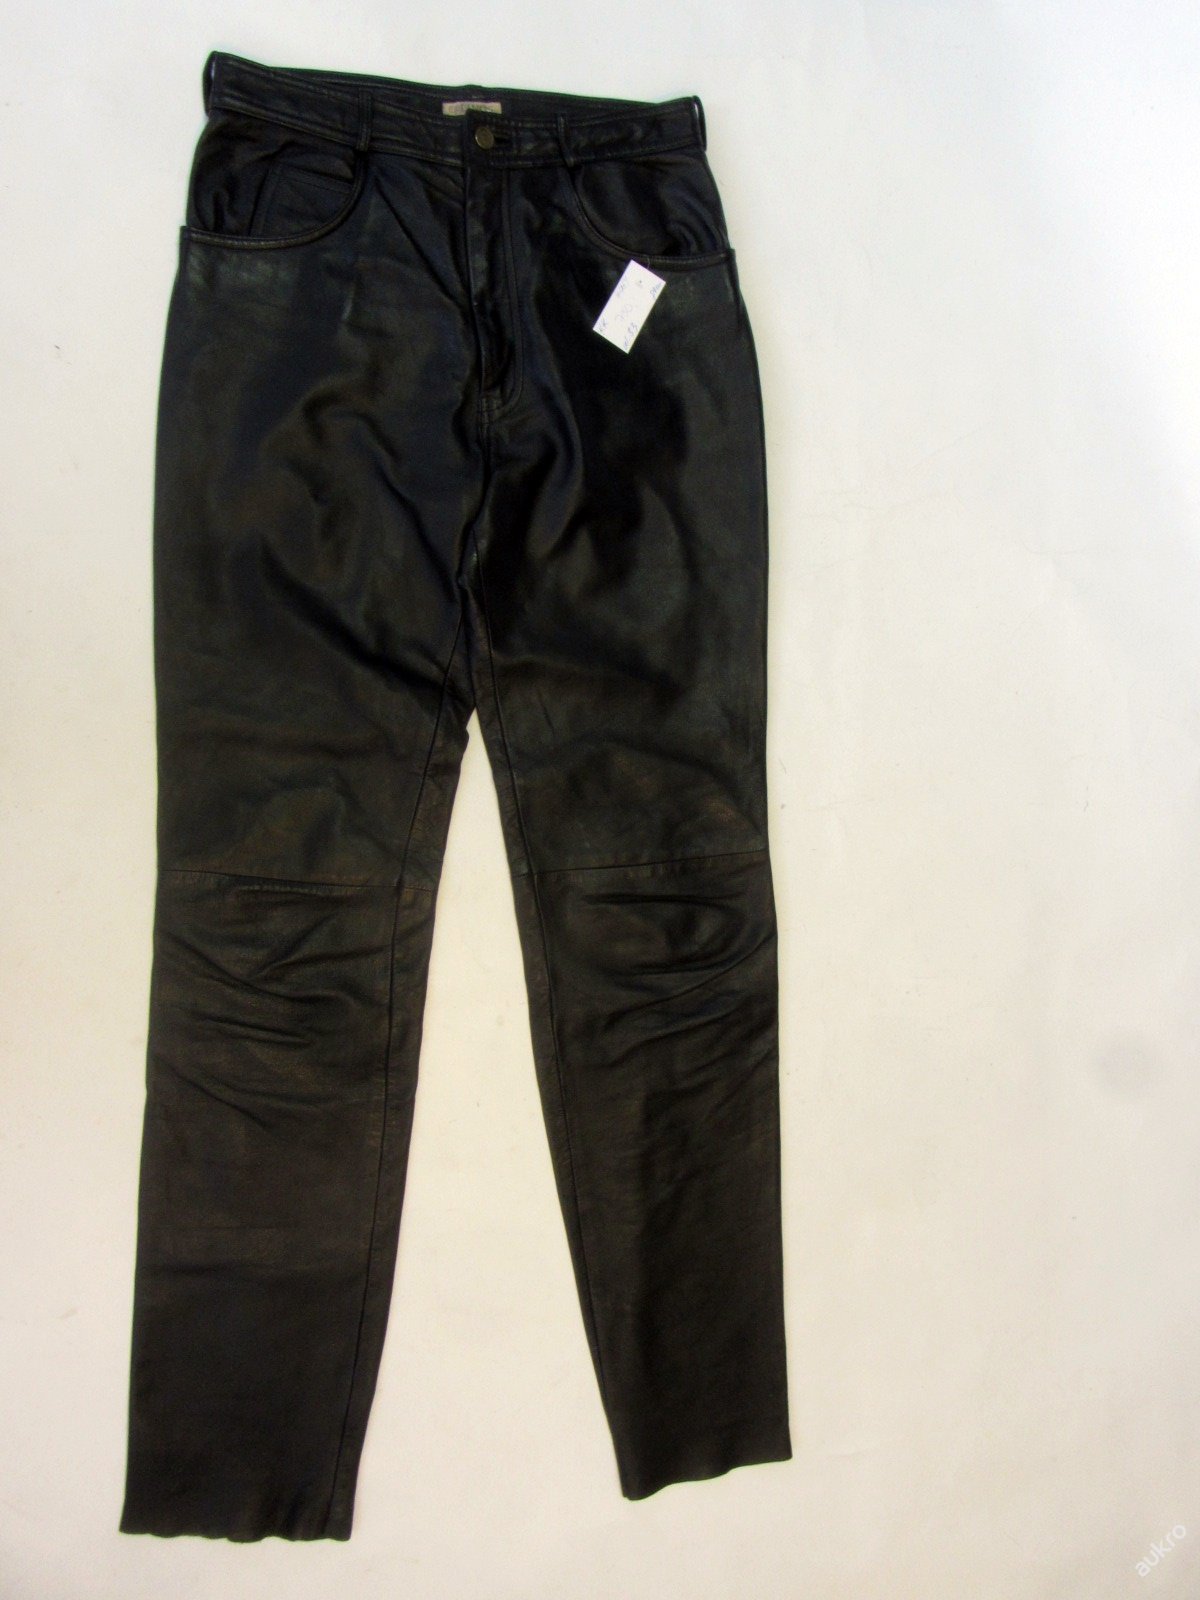 Kožené kalhoty LINUS vel. 33 - pas: 80cm (7954) - Náhradní díly a příslušenství pro motocykly